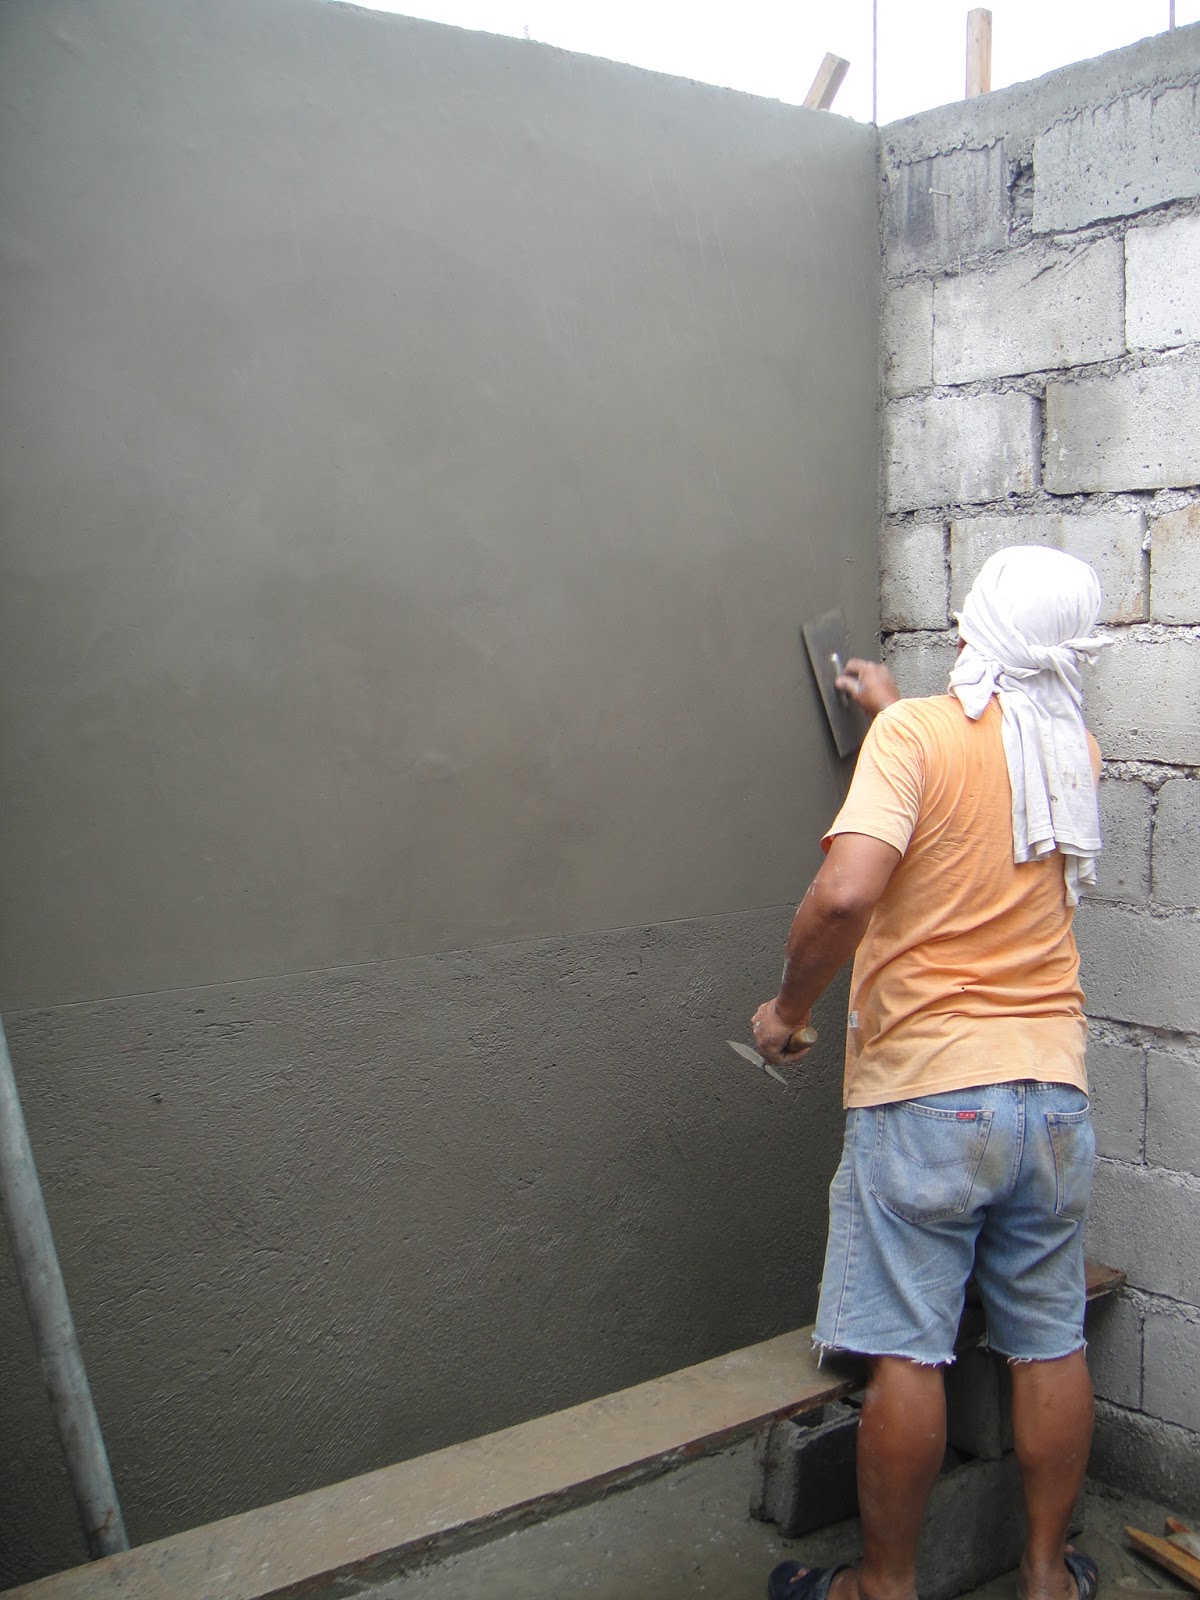 Оштукатуривание стен гипсовой штукатуркой: Журнал о дизайне интерьеров и ремонте Идеи вашего дома — IVD.ru